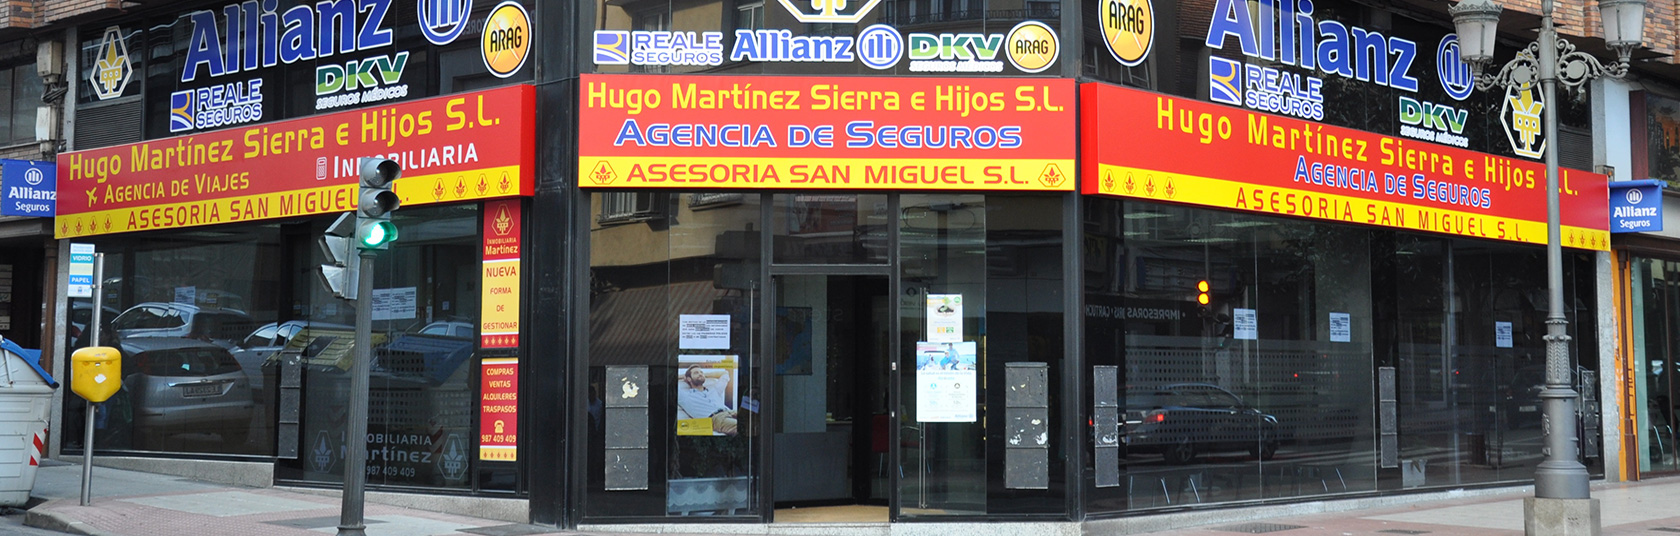 Alquiler para estudiantes, venta de seguros en Ponferrada, venta de pisos en Ponferranda.